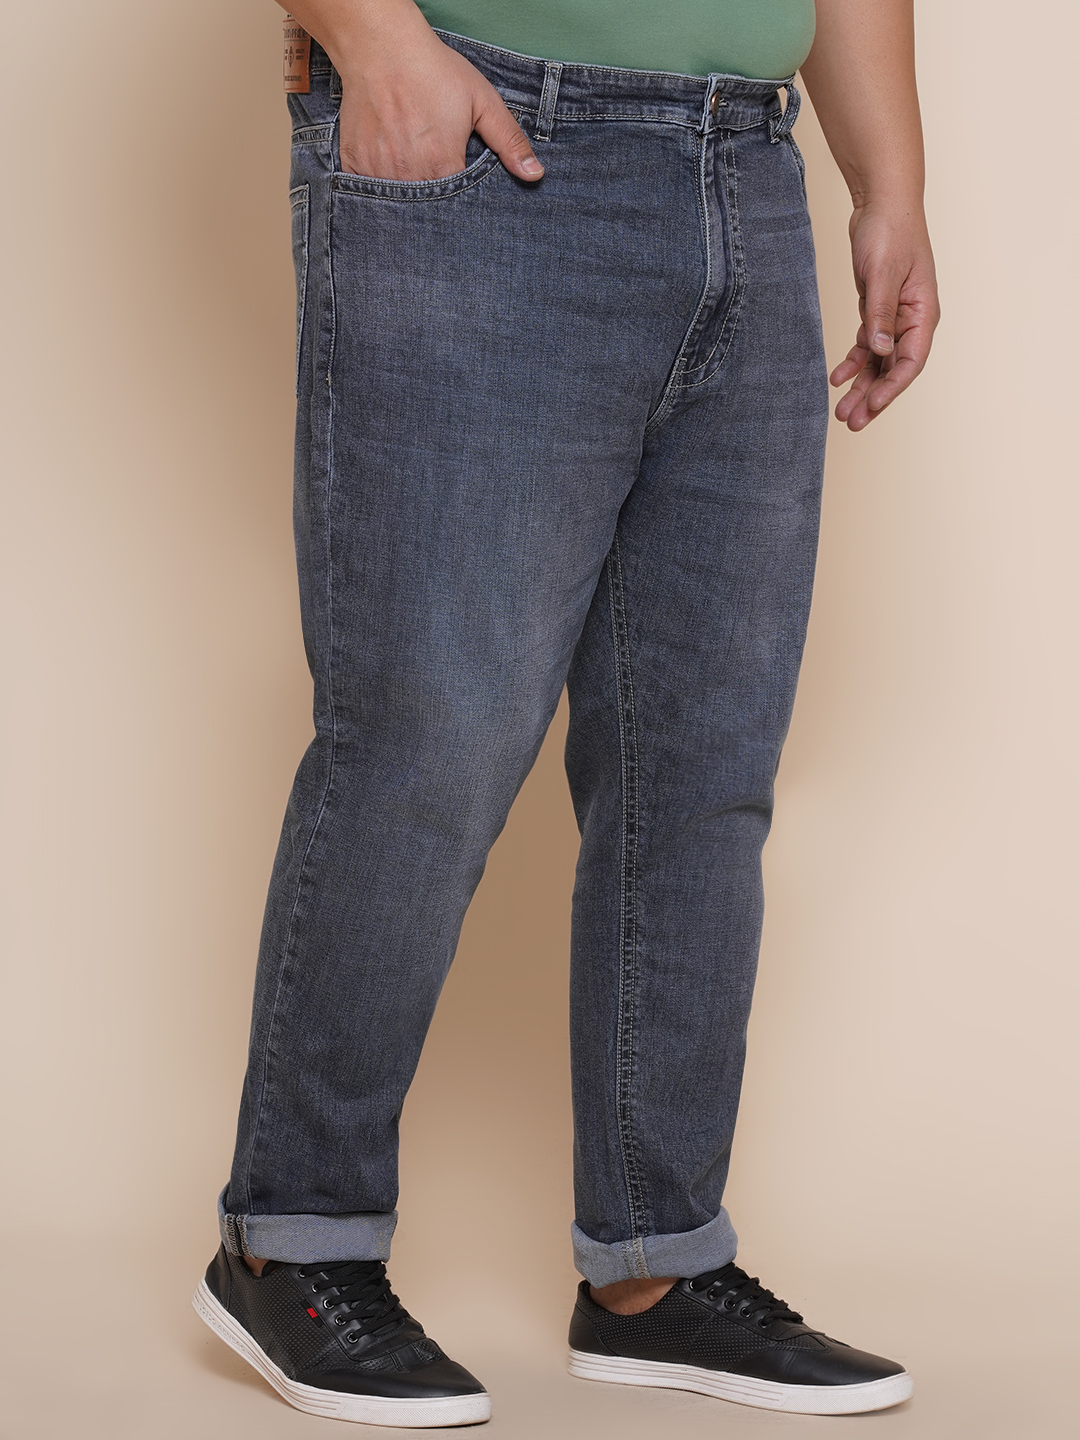 bottomwear/jeans/JPJ27003/jpj27003-3.jpg